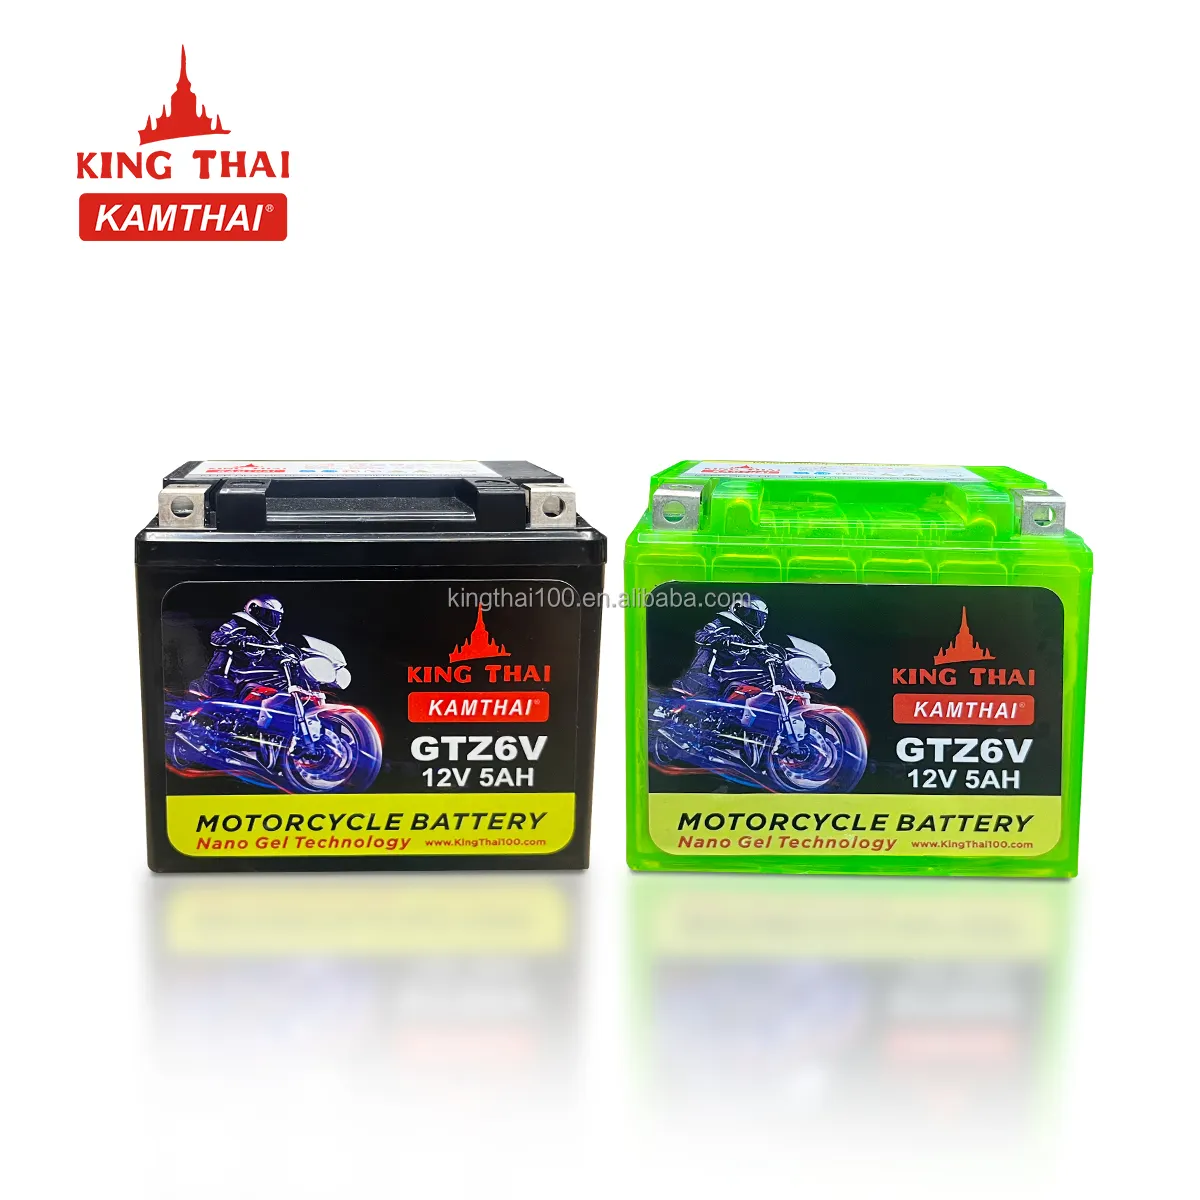 Kamthai แบตเตอรี่มอเตอร์ไซค์ไฟฟ้า12V-5AH GTZ6V แบตเตอรี่ลิเธียม12V สำหรับรถจักรยานยนต์ซูซูกิ GTZ6V แบตเตอรี่